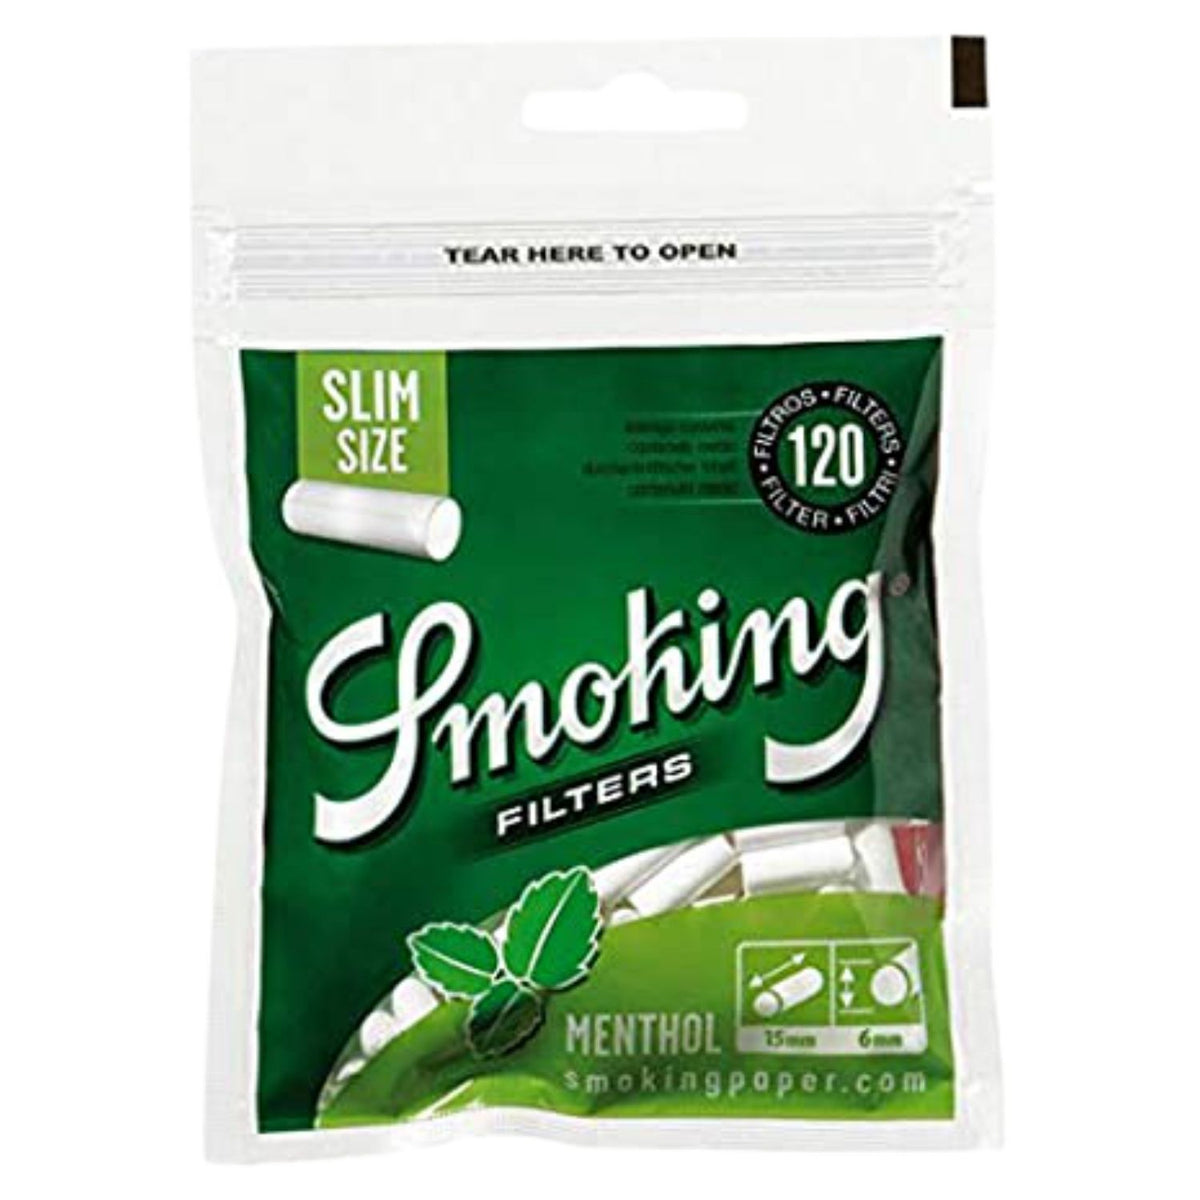 SMOKING Menthol Cotton Filter - 120 Tips